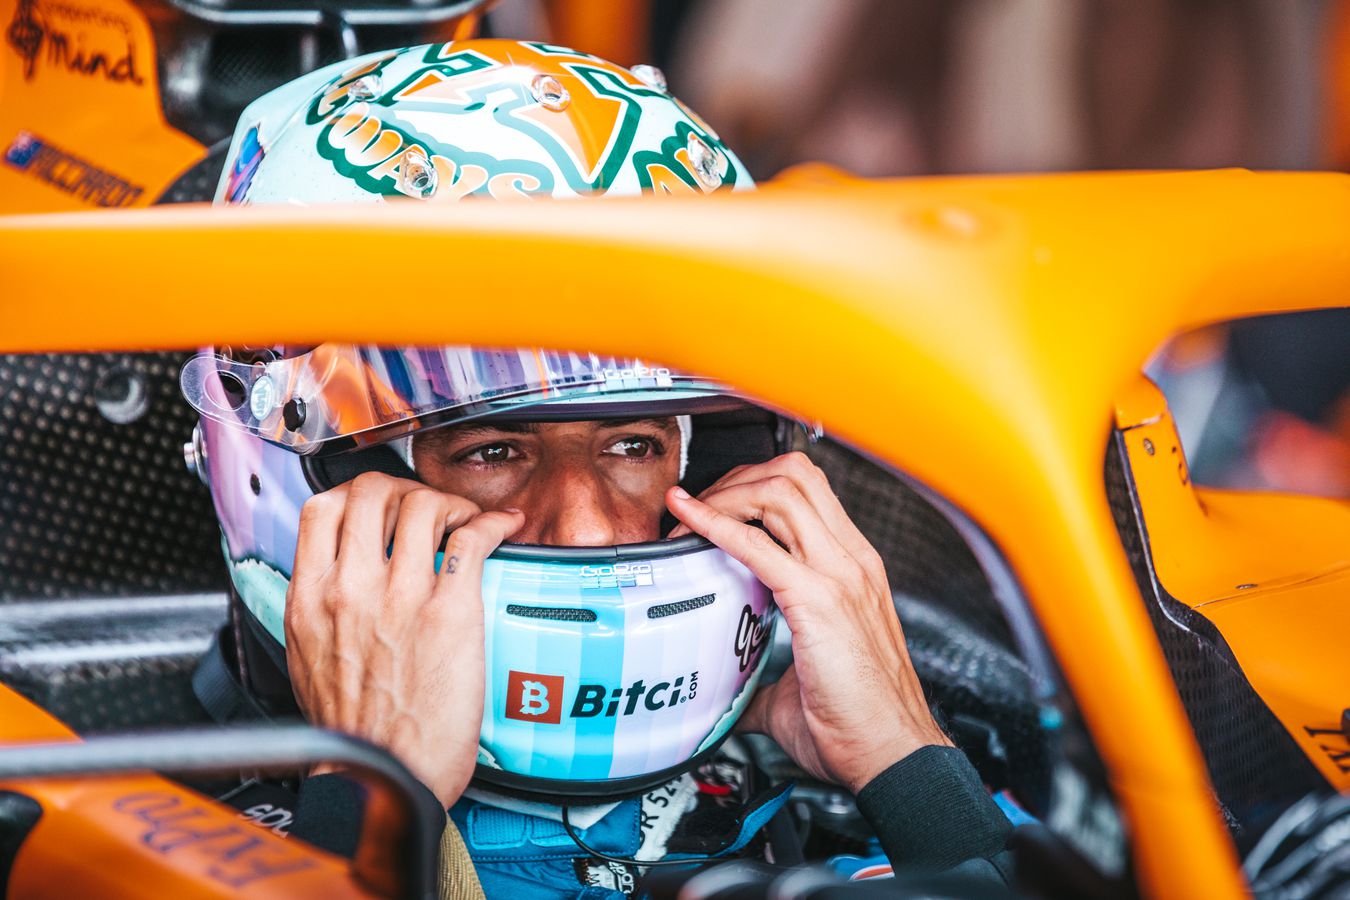 Ufficiale! Daniel Ricciardo lascia la McLaren alla fine dell’anno